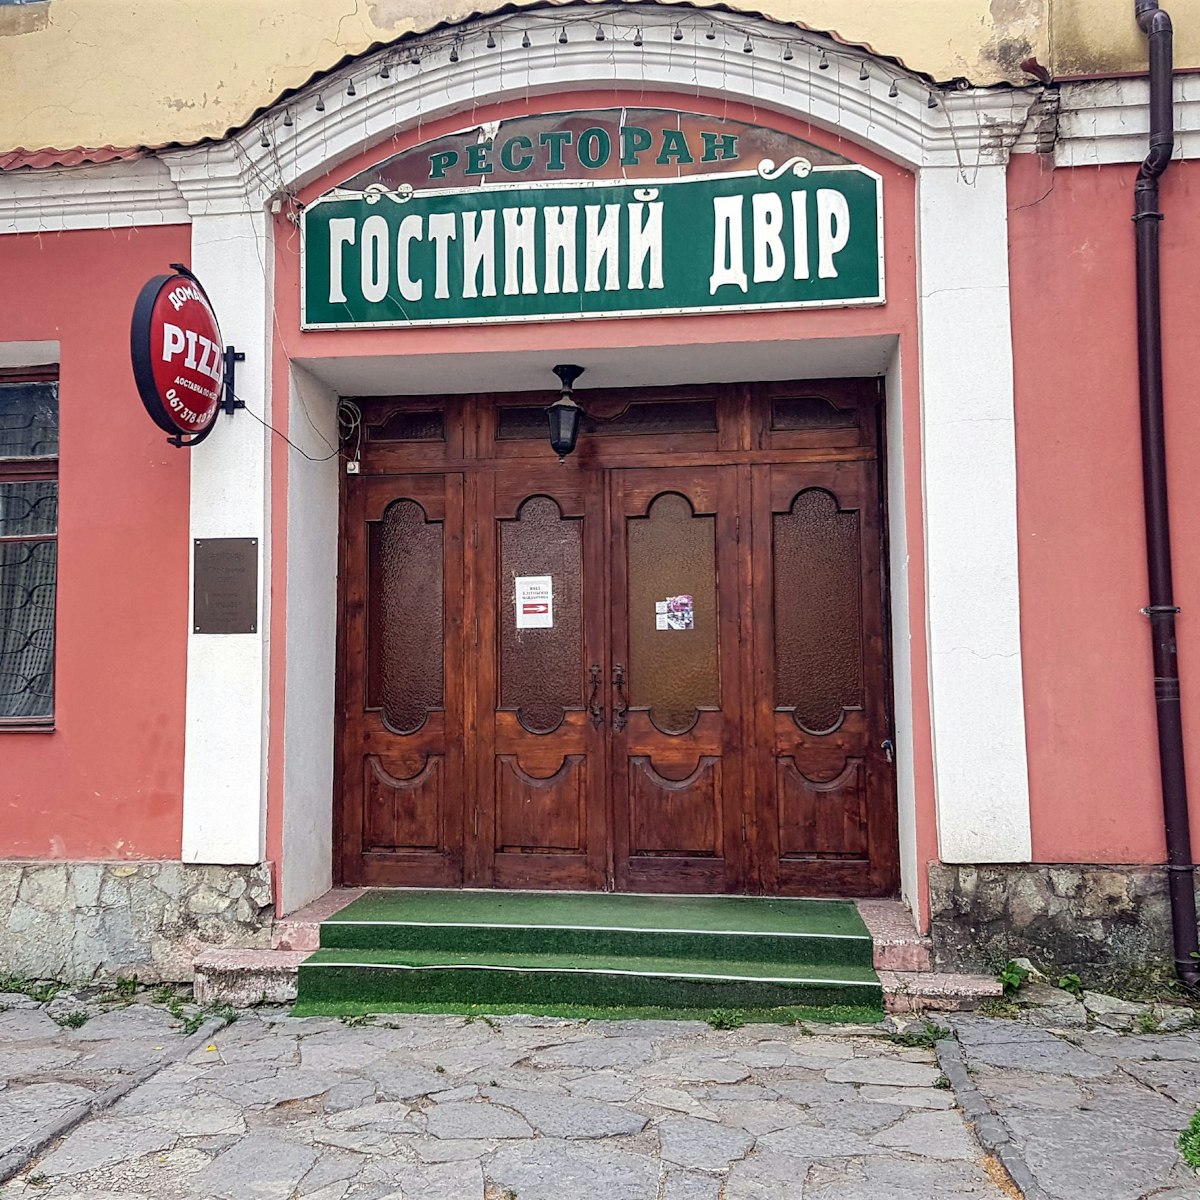 Entrance to Hostynny Dvir restaurant in Kamyanets-Podilsky.